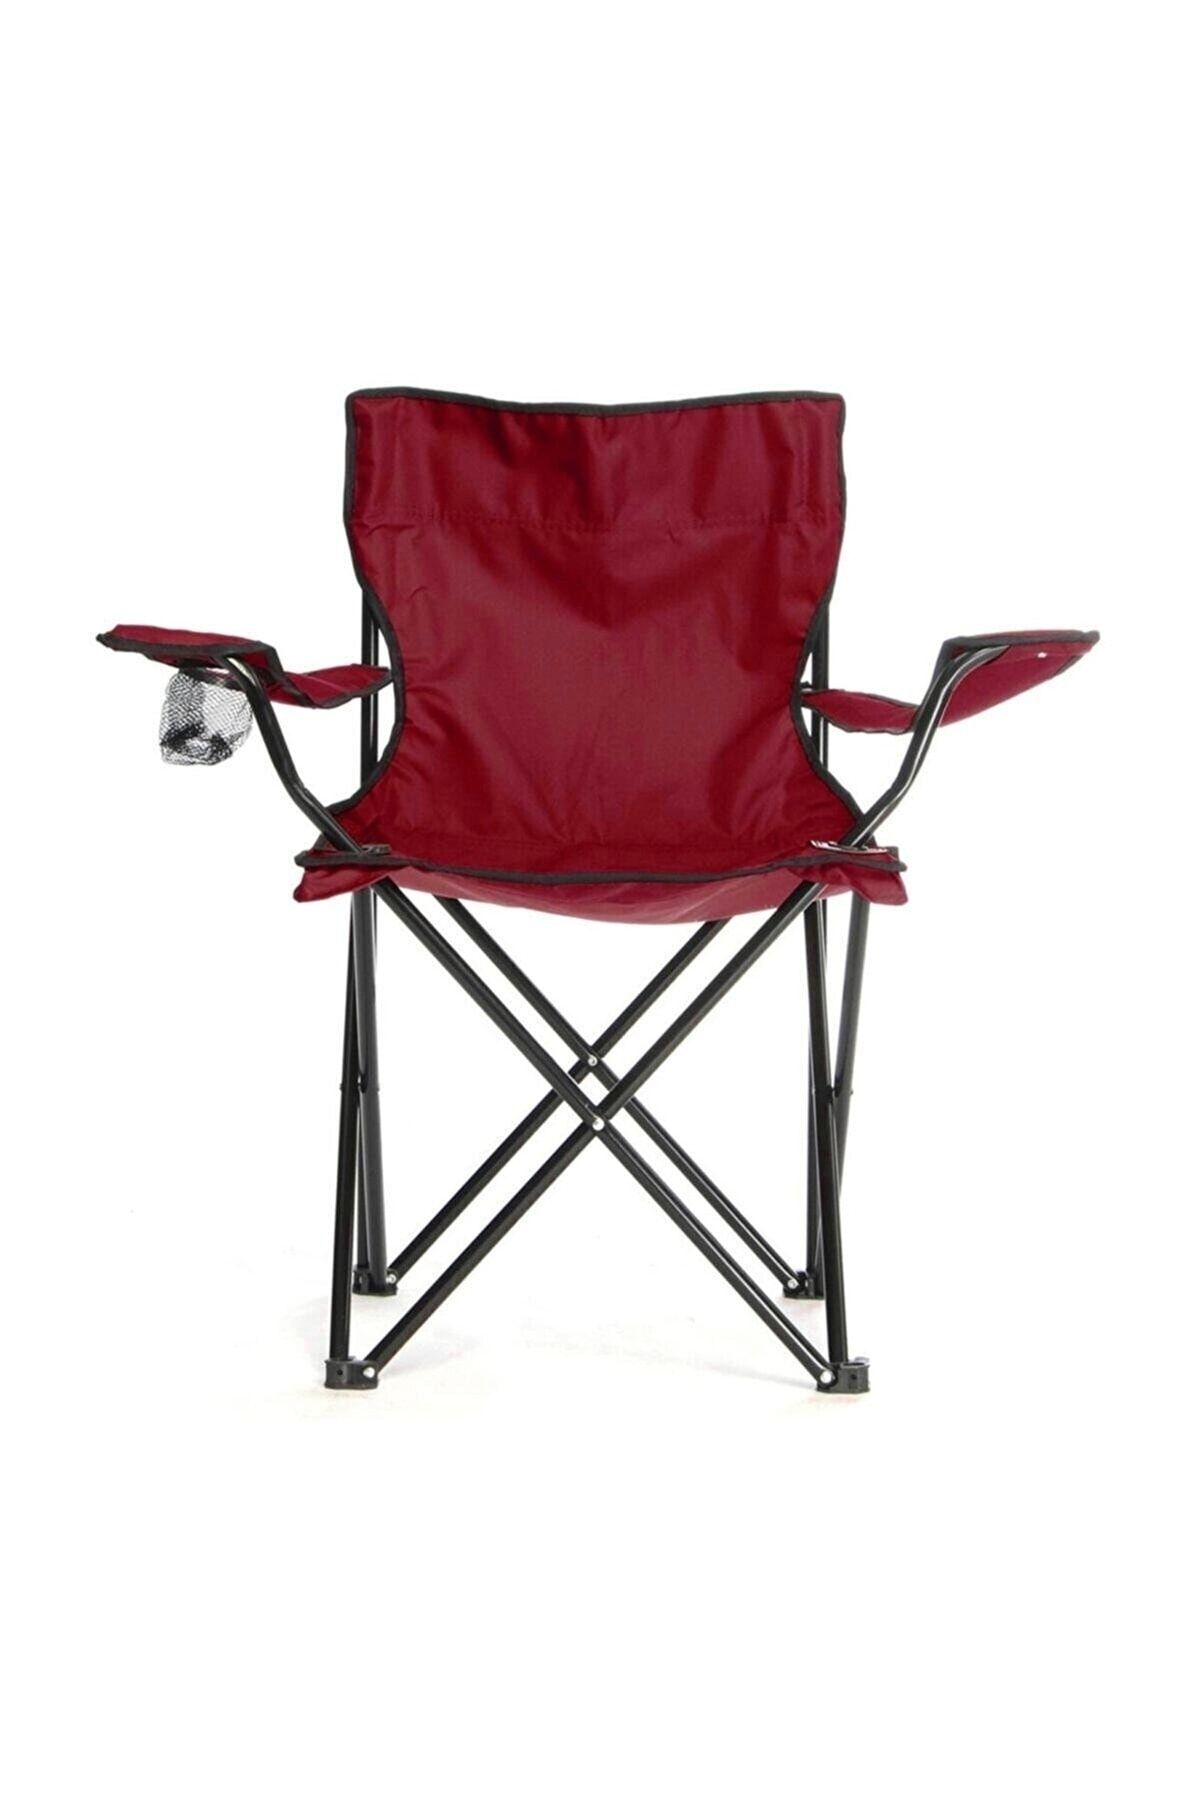 Body-GYM Taşınabilir Katlanır Kamp Sandalyesi - Kırmızı